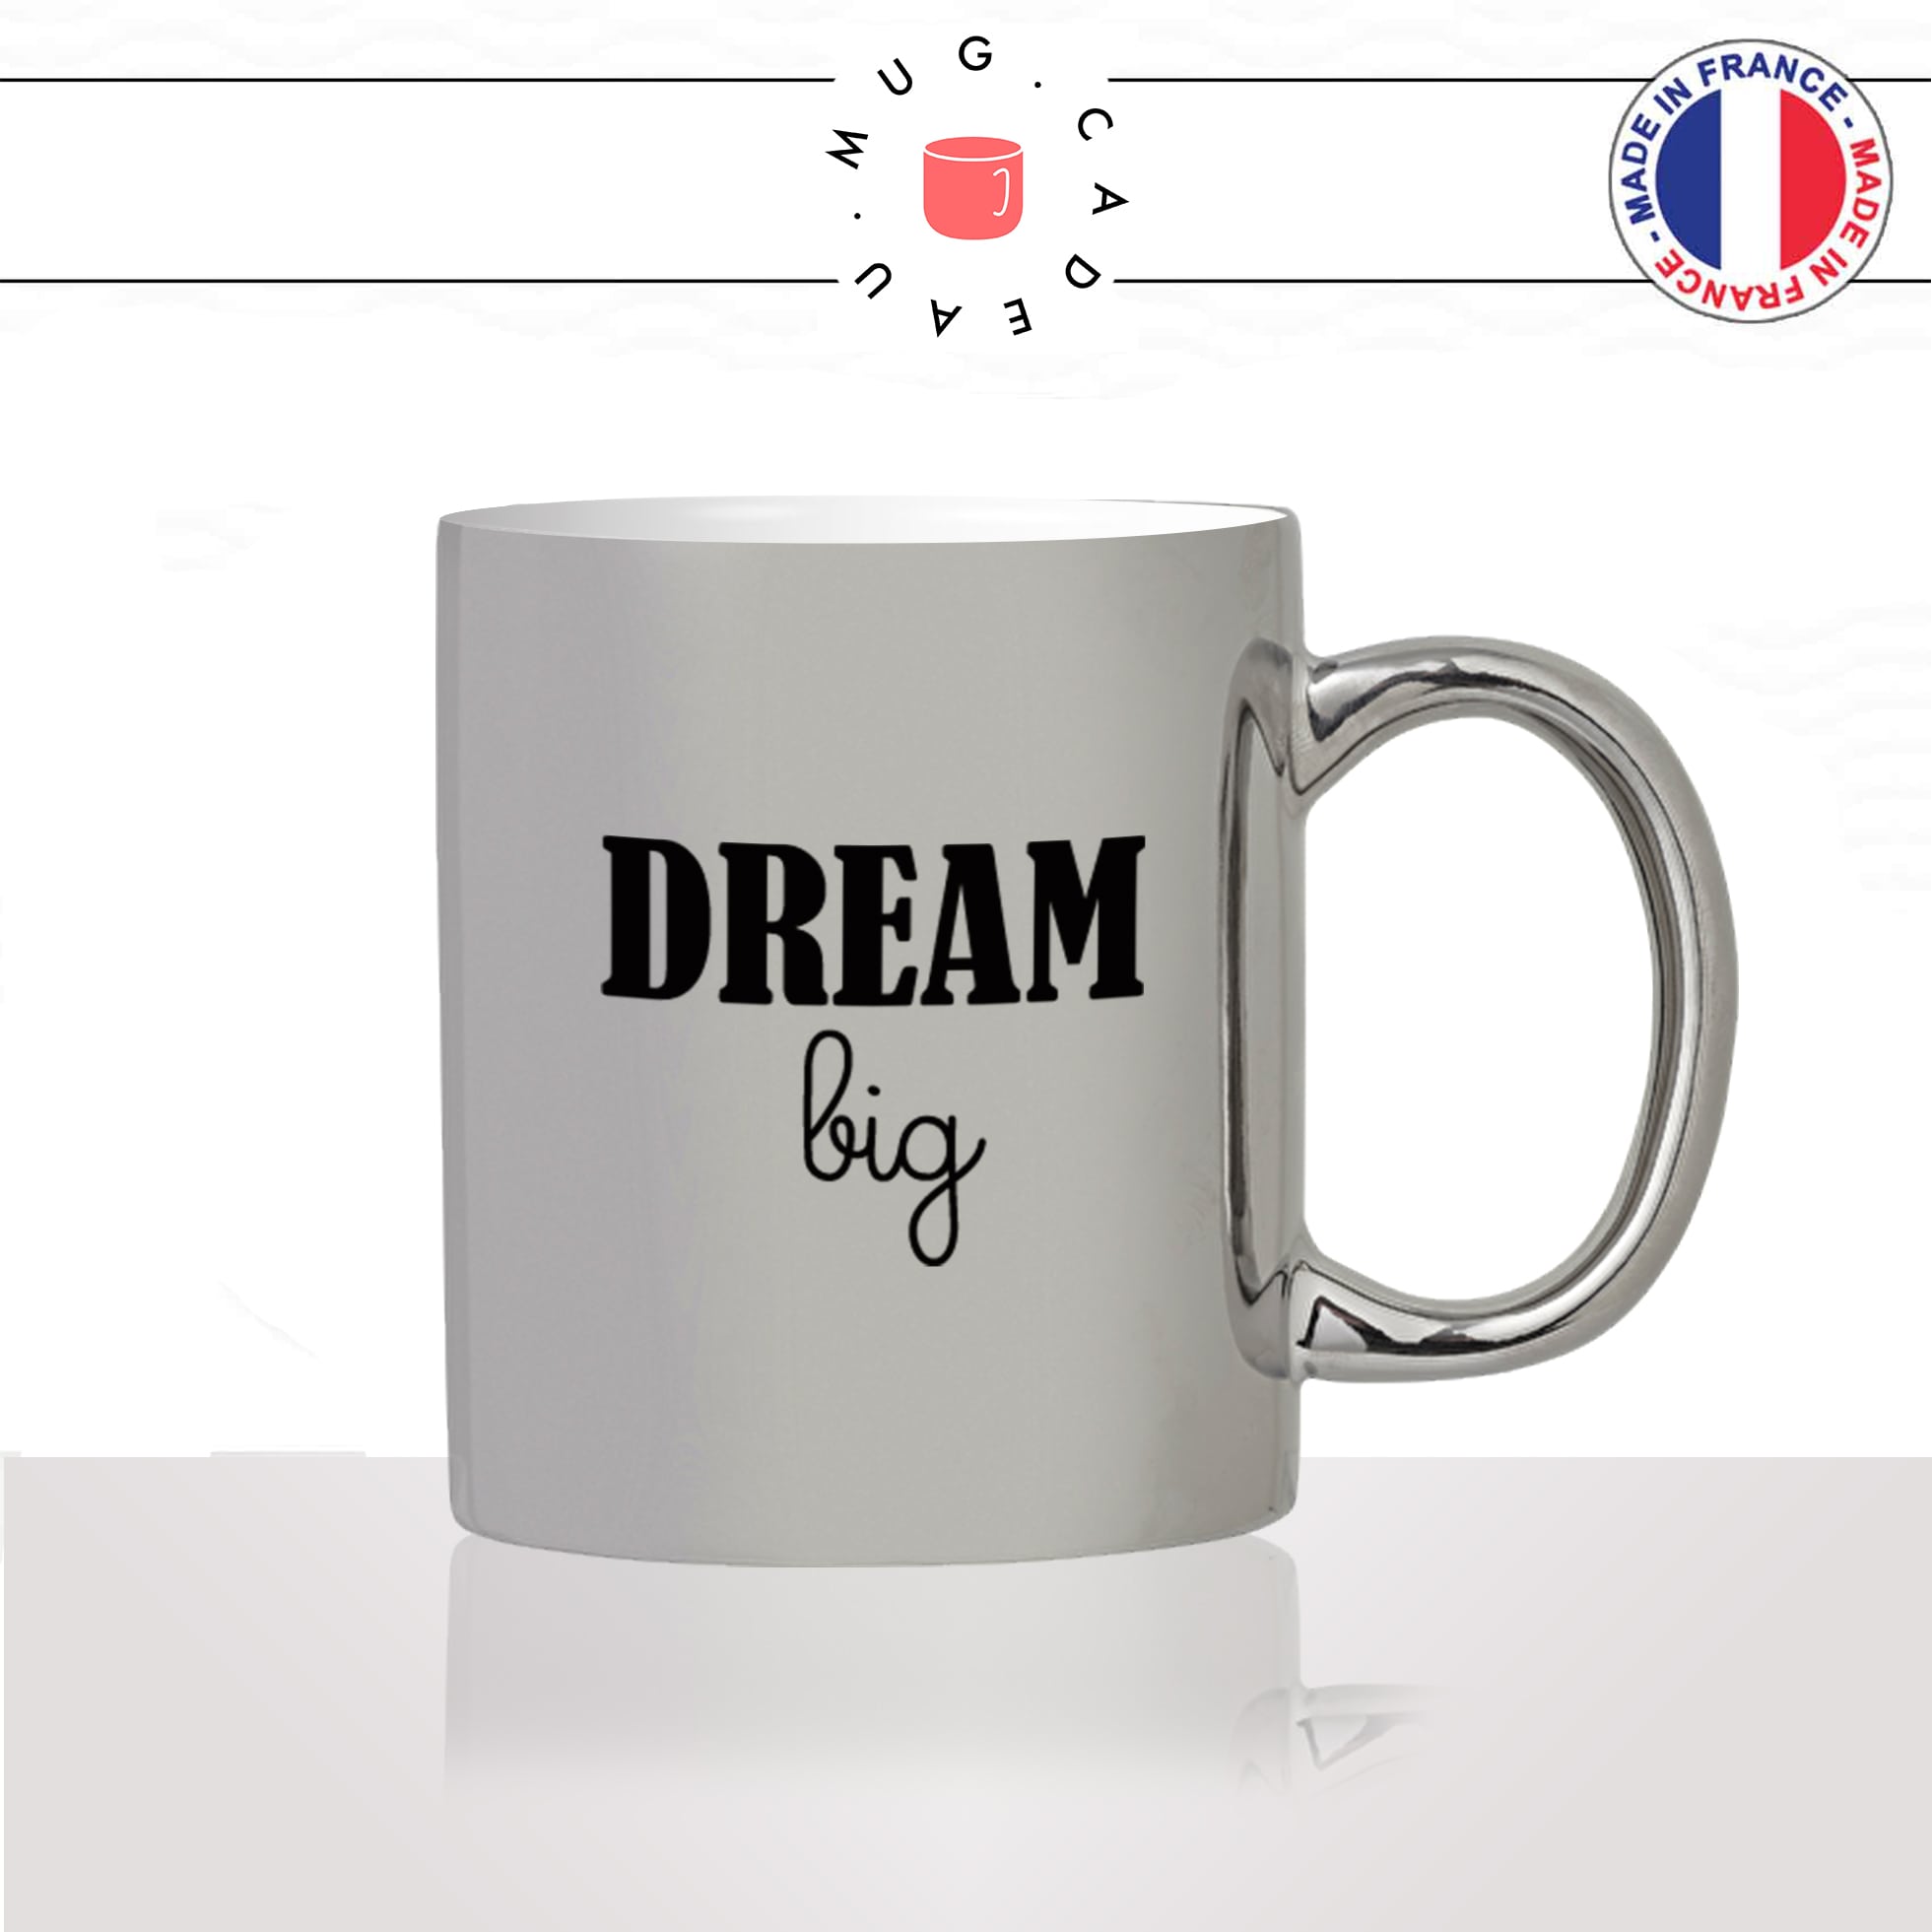 mug-tasse-argent-argenté-silver-dream-big-homme-femme-muscu-travel-sport-collegue-motivation-humour-idée-cadeau-fun-cool-café-thé2-min